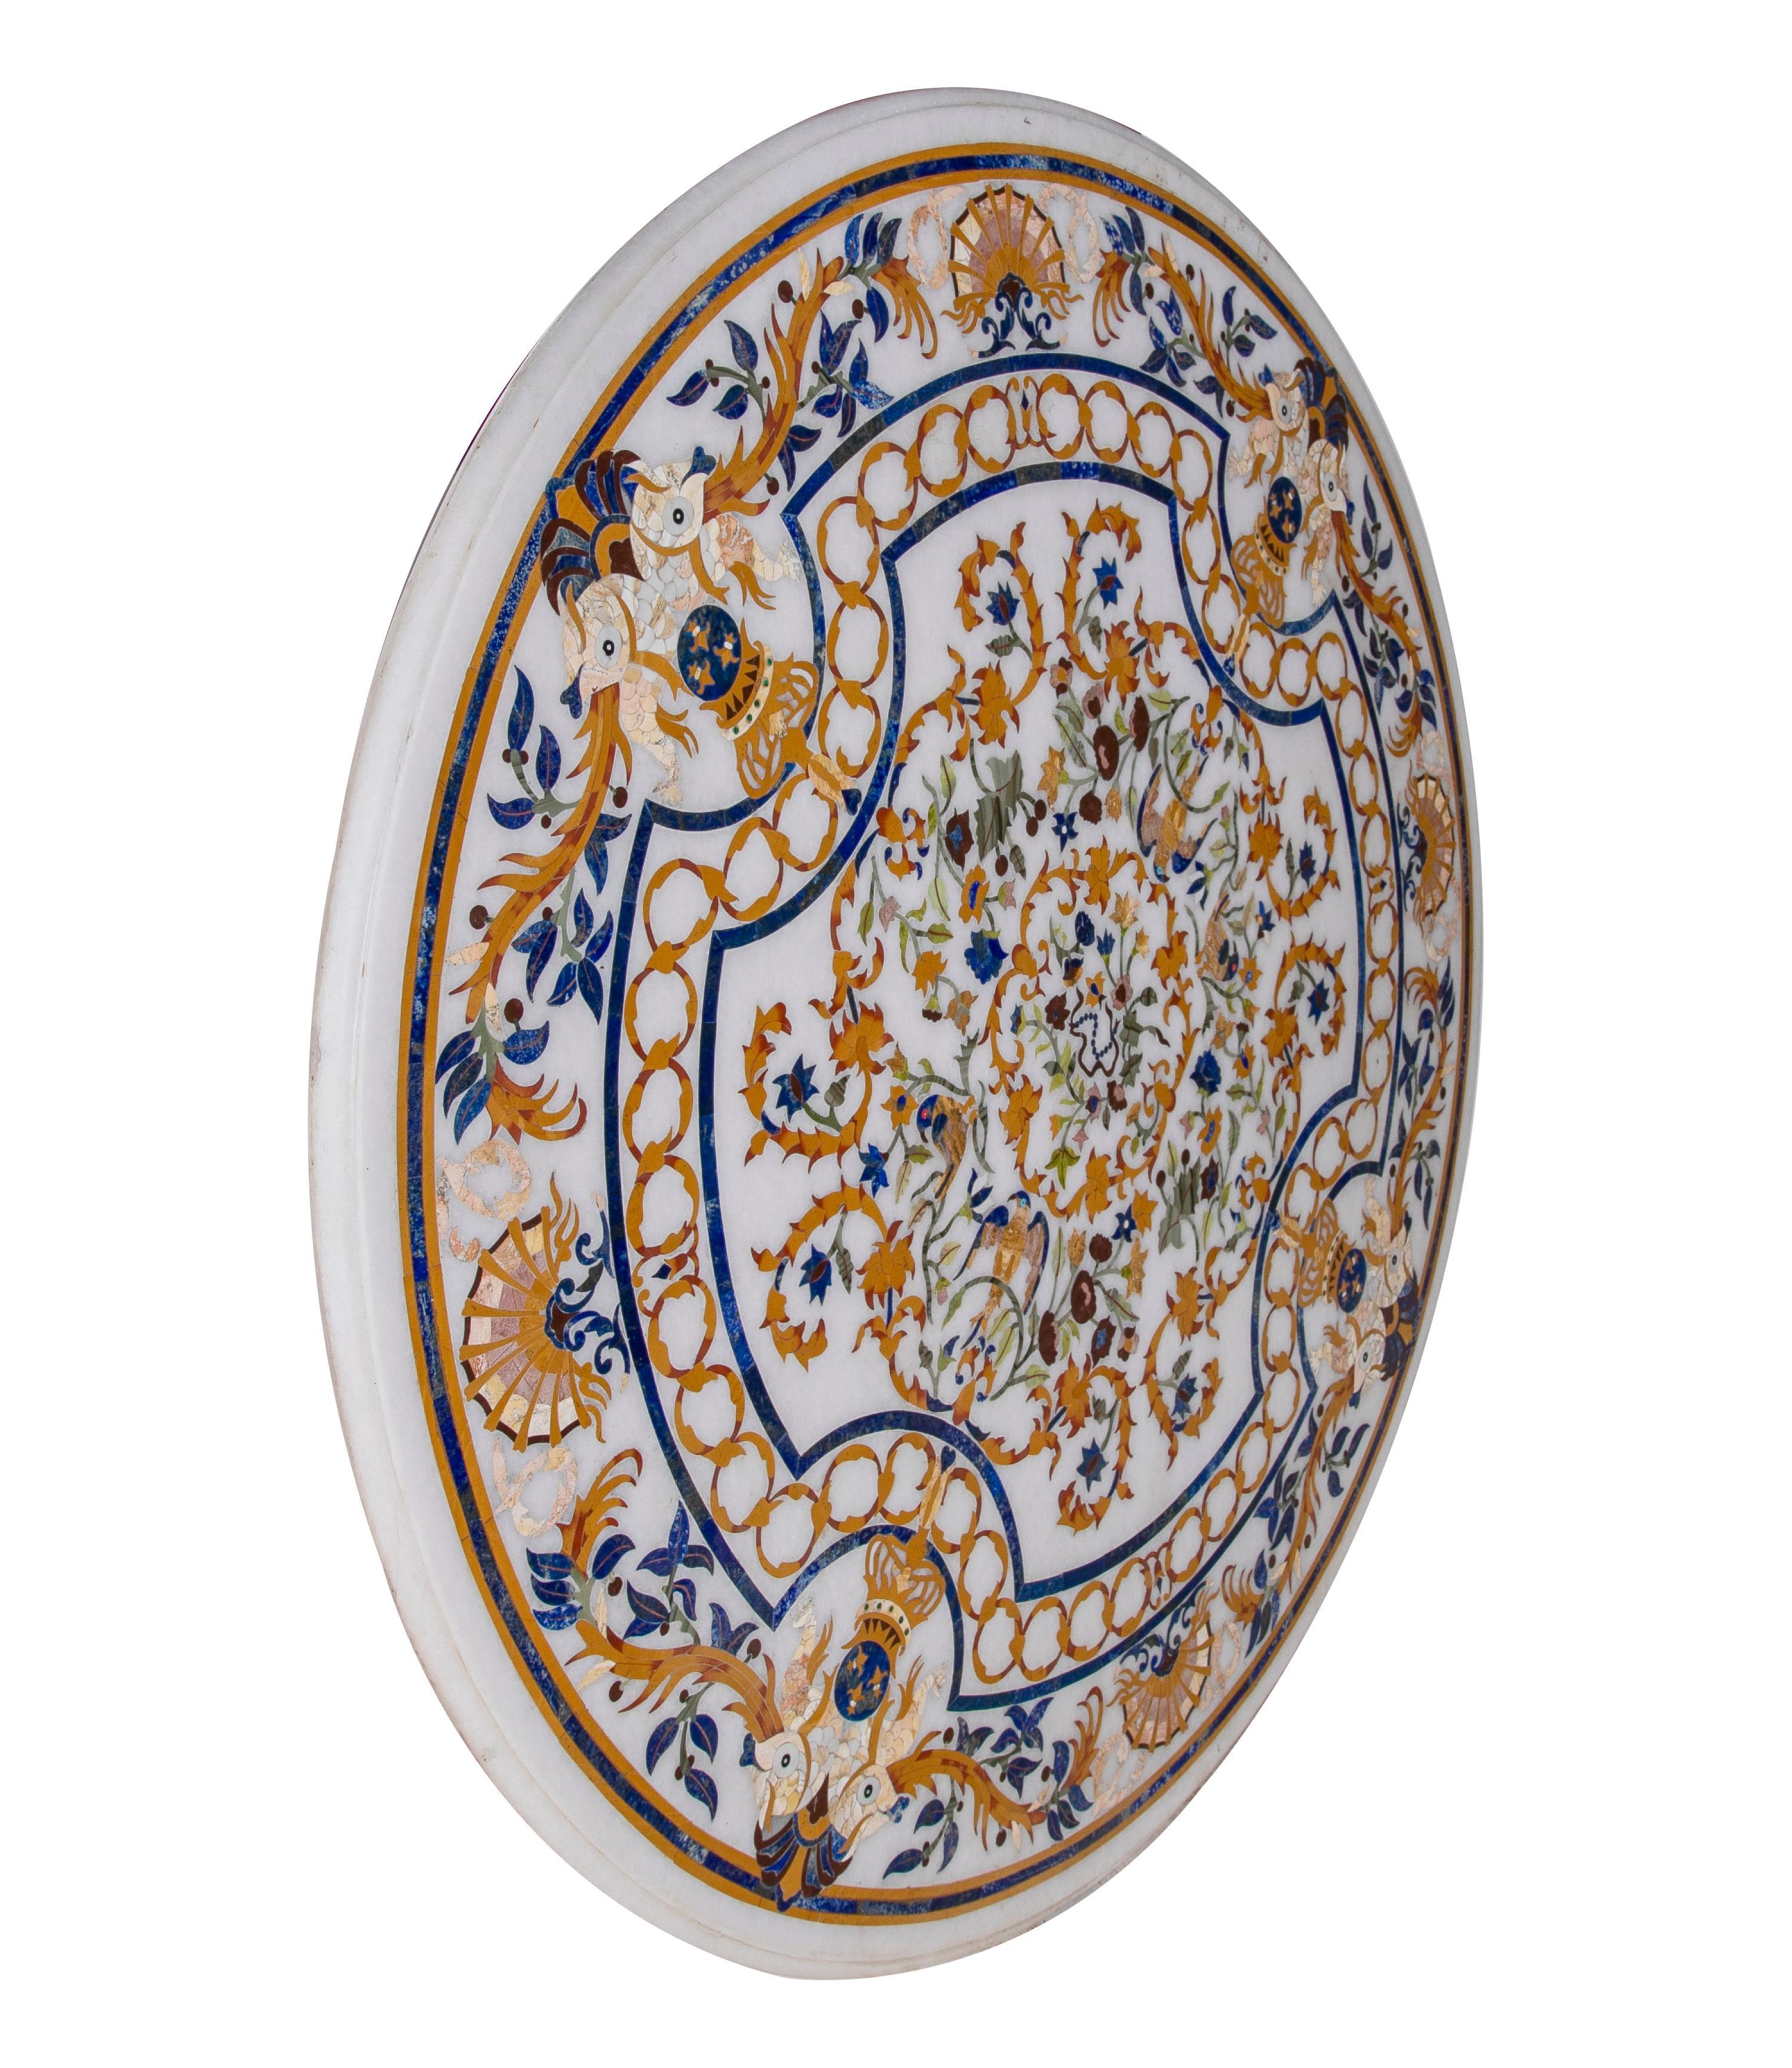 Plateau de table rond en marbre blanc classique baroque des années 1990, fabriqué à la main en Pietra Dura et incrusté de mosaïques, avec lapis-lazuli et un assortiment de marbres colorés.